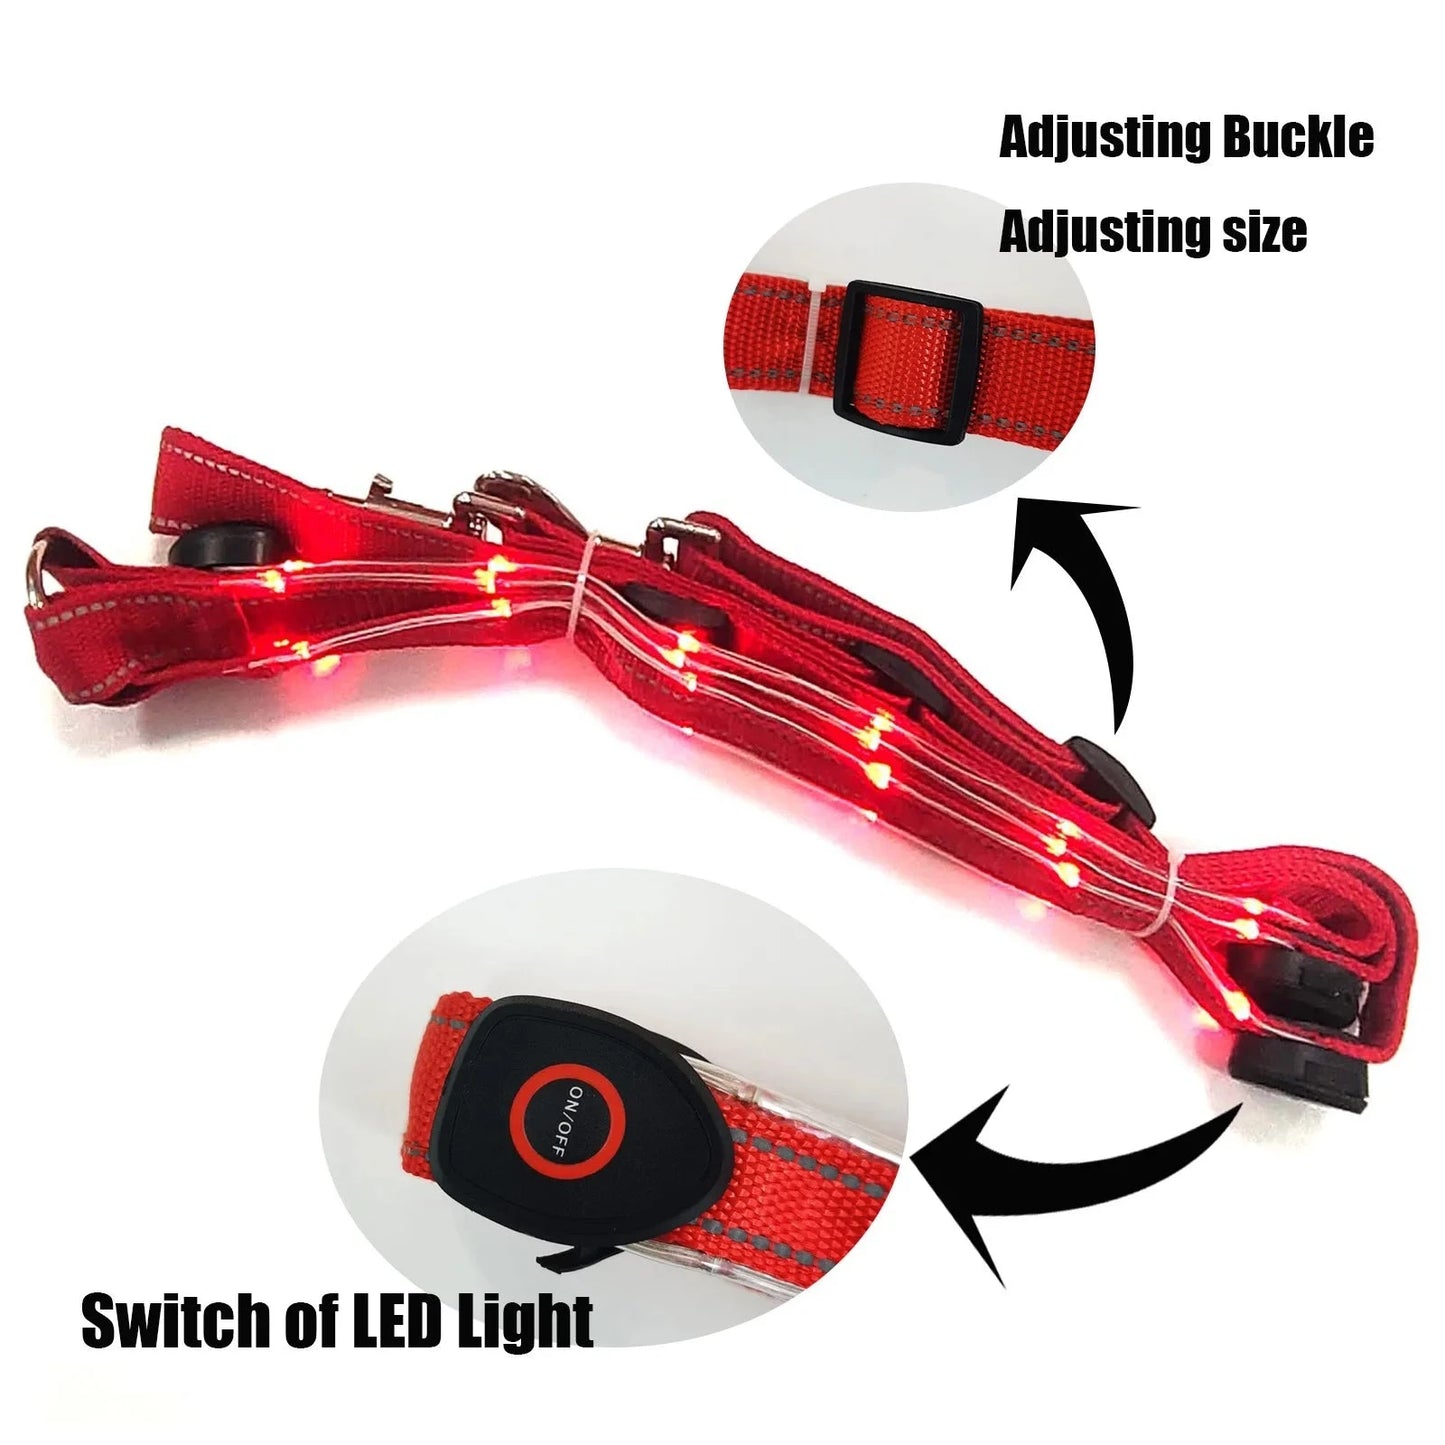 Erleuchten Sie Ihre Reitererfahrung: USB LED Pferdeleuchte als Brustplatte aus Nylon mit nachtsichtbarem Webbing – Perfekte Ausrüstung für Pferdesport und Rennen!